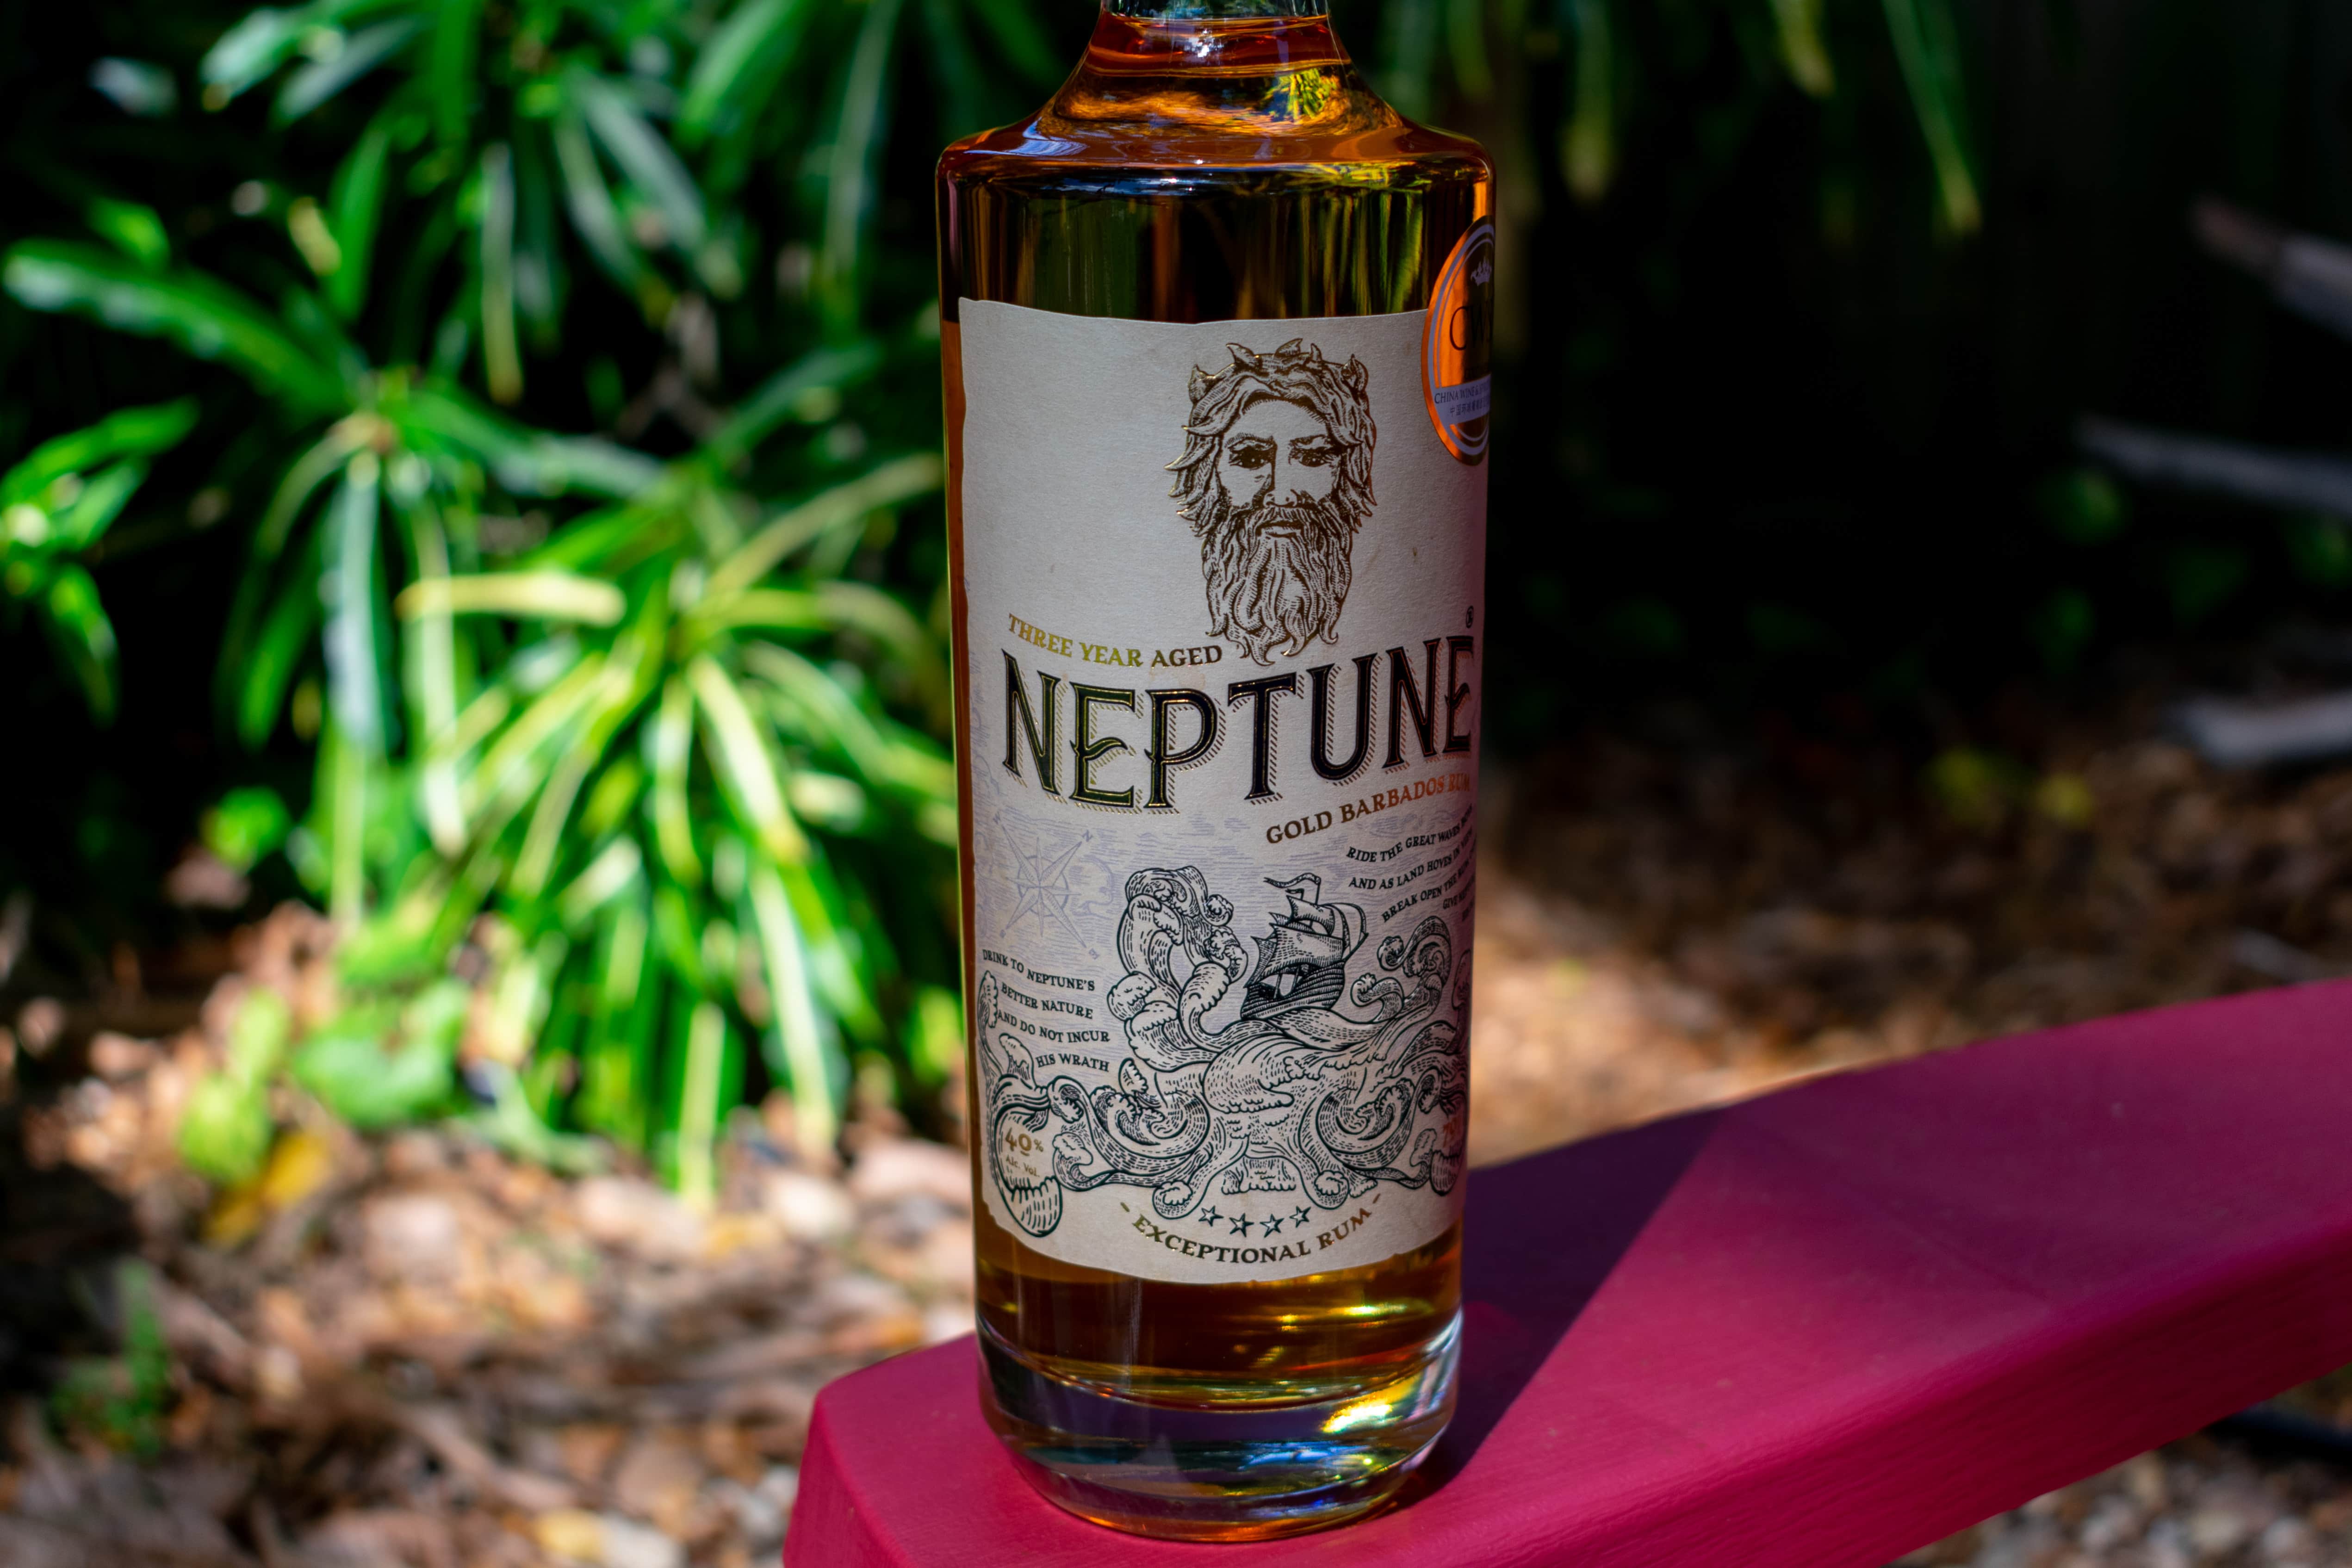 Neptune Rum Three-Year Aged Gold